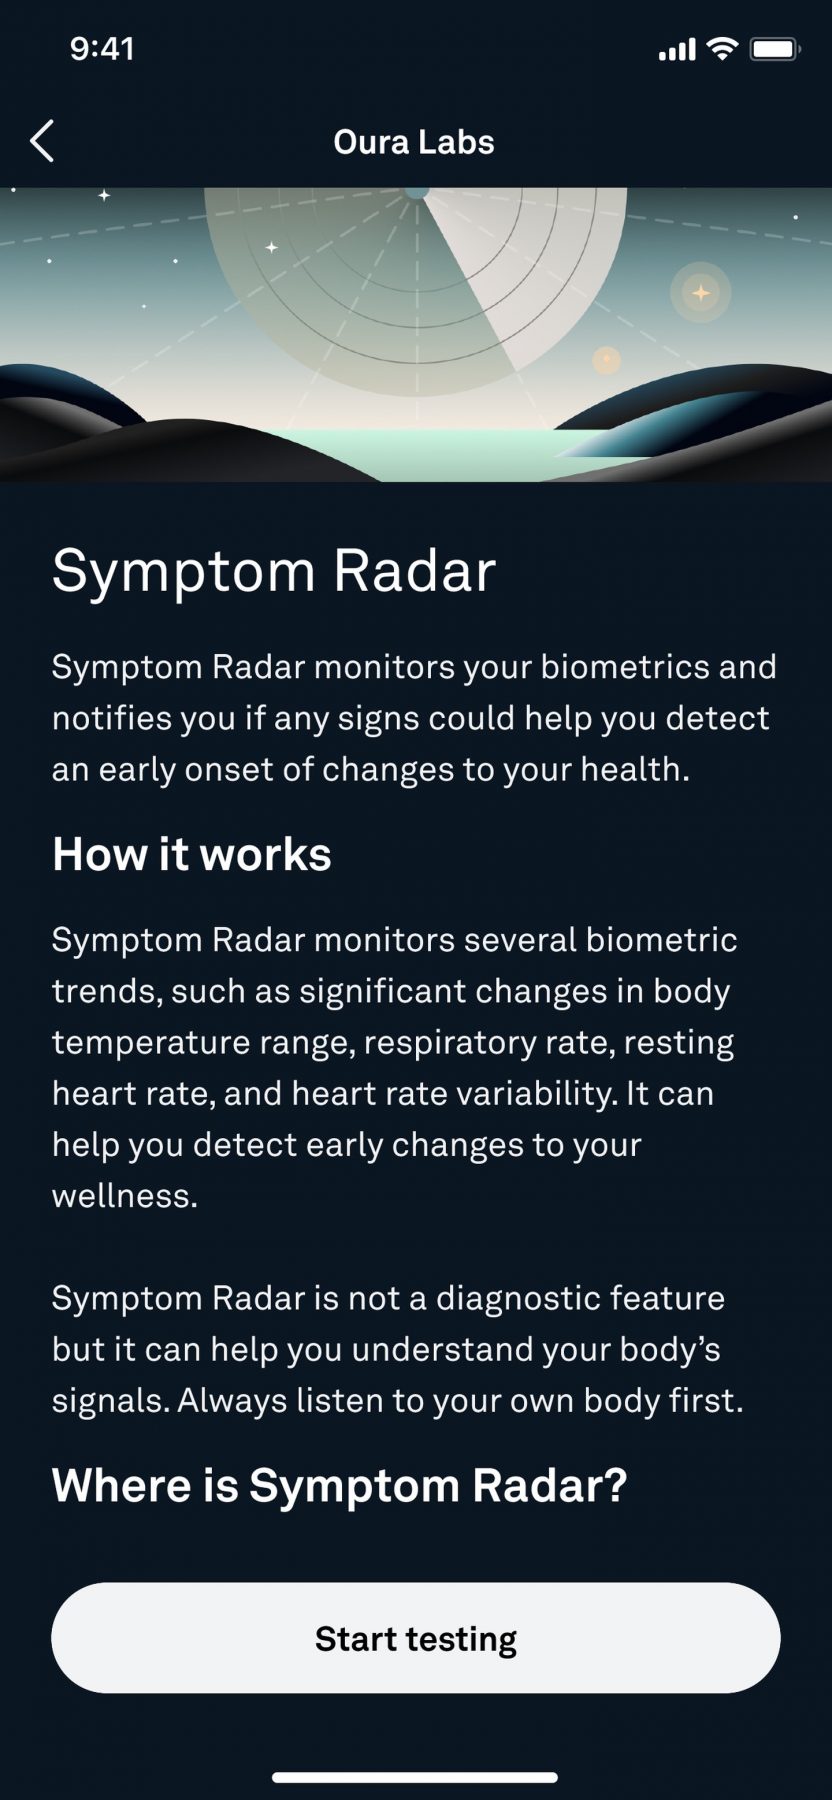 Sympton Radar on uusi Oura Labs -ominaisuus.